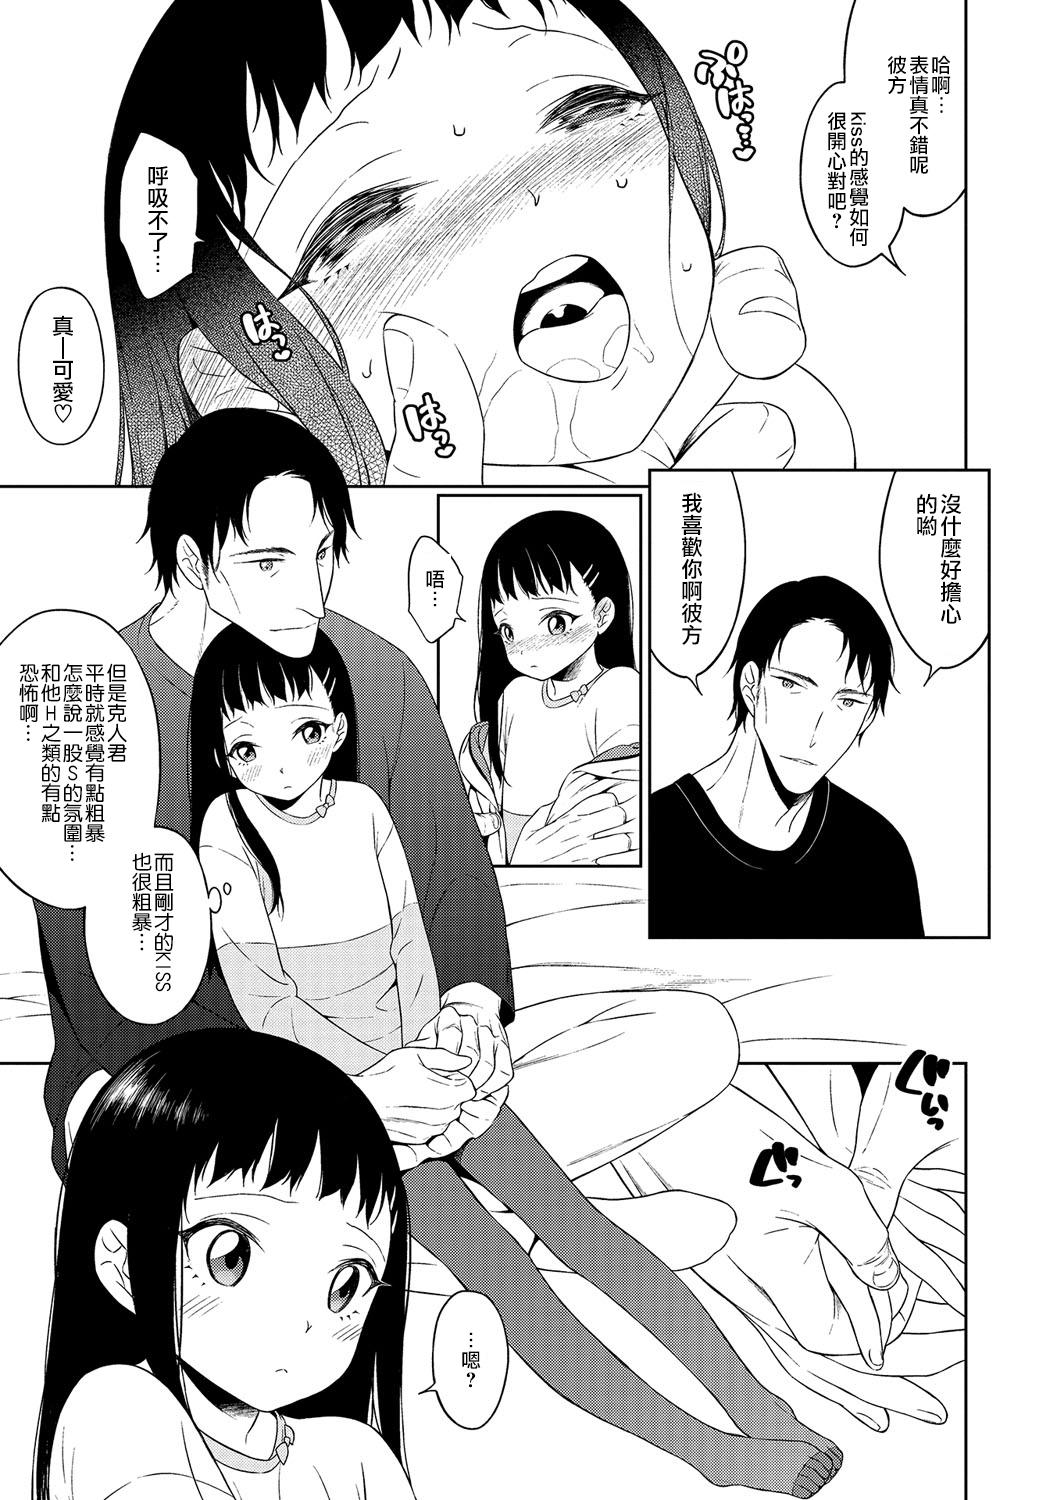 Corno Itoshi no? Giwaku no? S Kei Kareshi Transex - Page 3